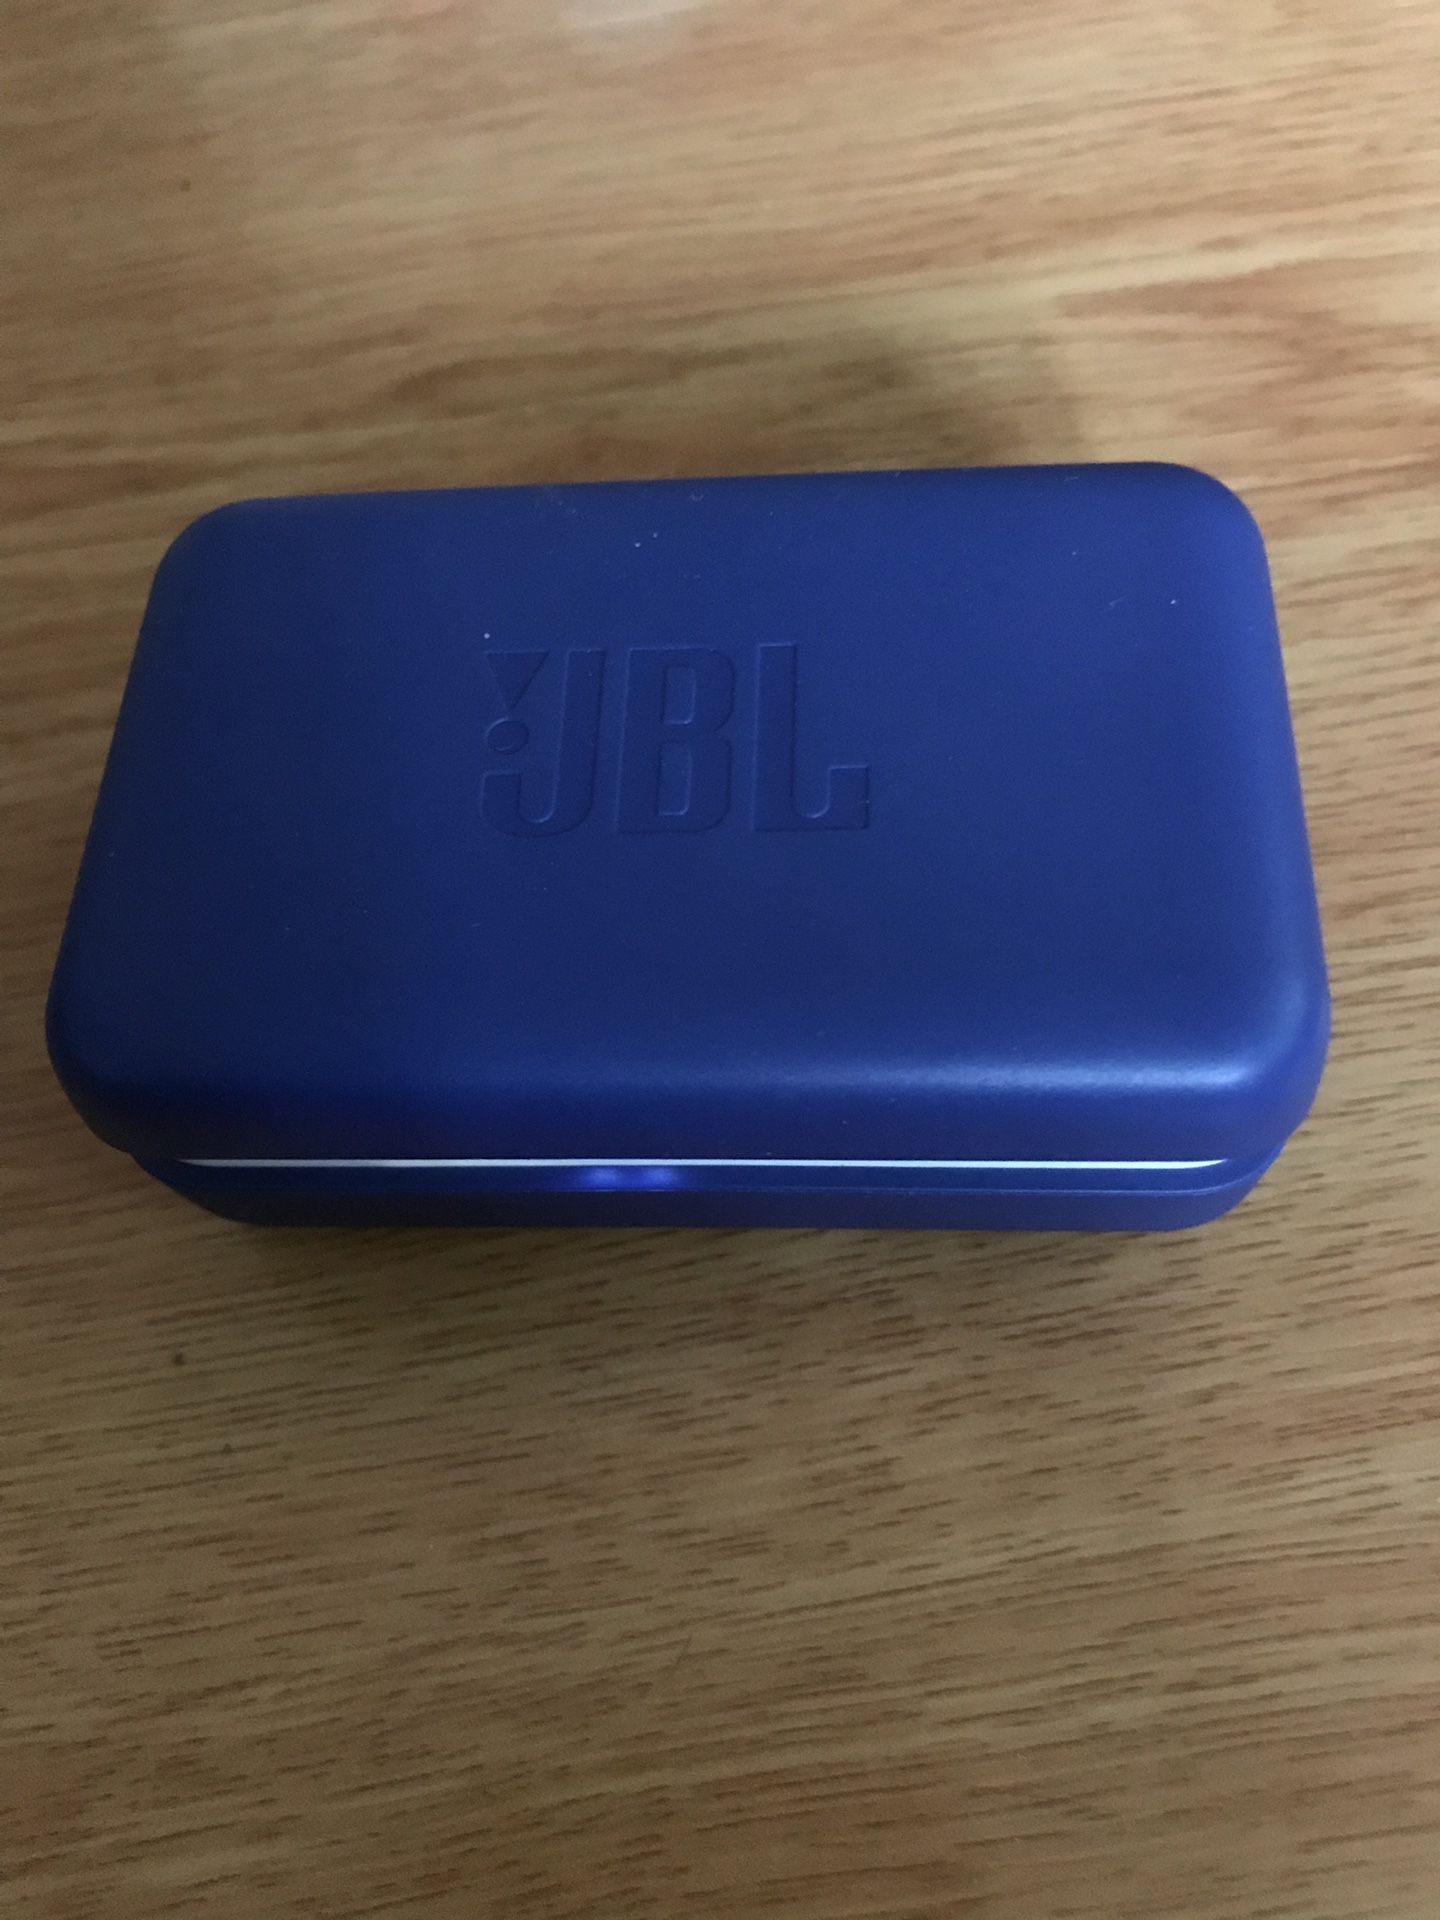 JBL Endurance Peak True Wireless In-Ear Headphones